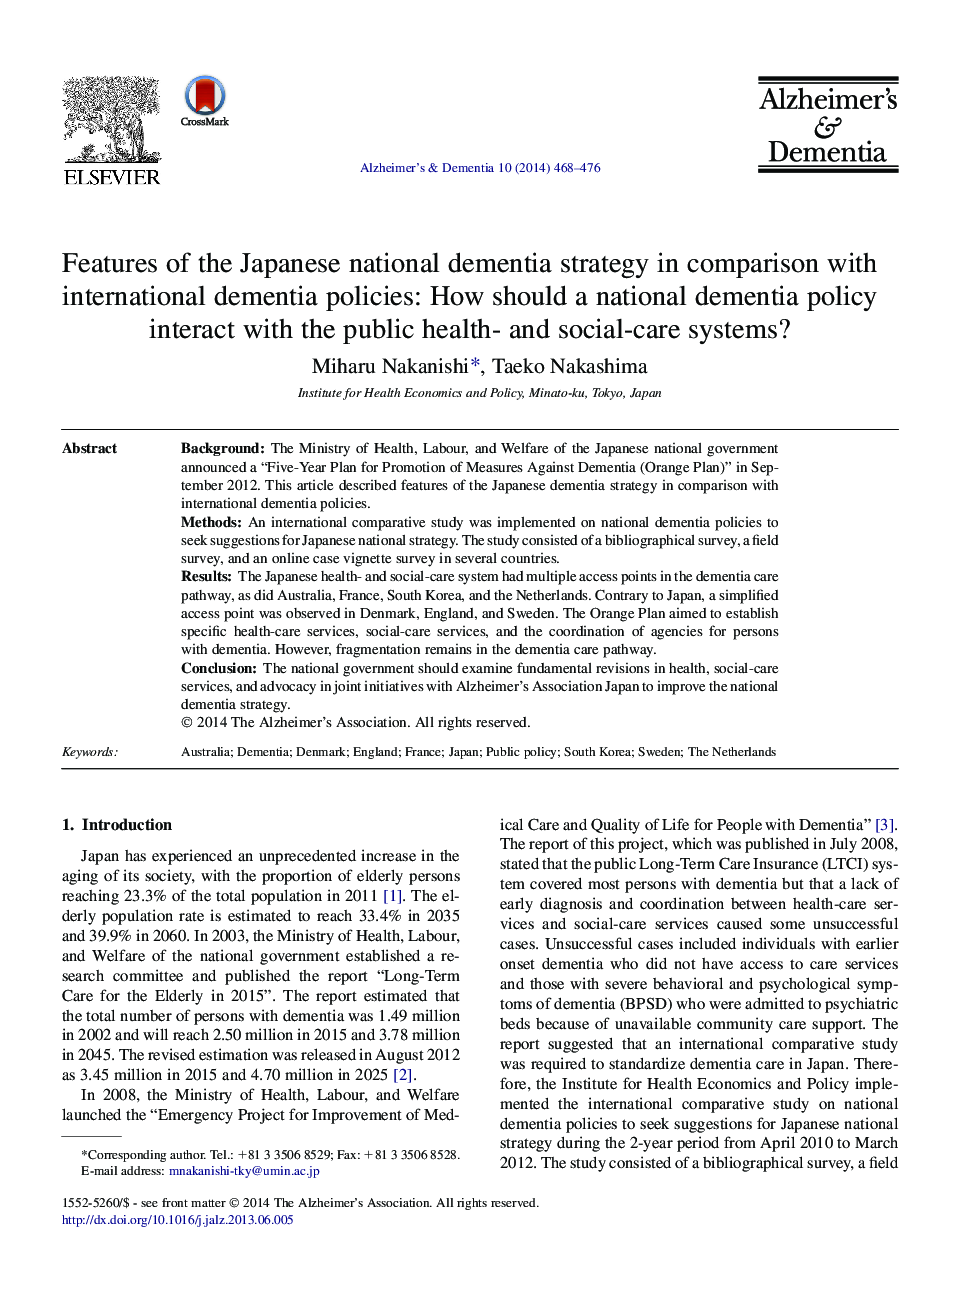 مقالات ویژه در خصوص استراتژی دینامیکی ملی ژاپن در مقایسه با سیاست های بین المللی زوال عقل: چگونه یک سیاست دمانس ملی با سیستم های بهداشت عمومی و مراقبت های اجتماعی ارتباط برقرار می کند؟ 